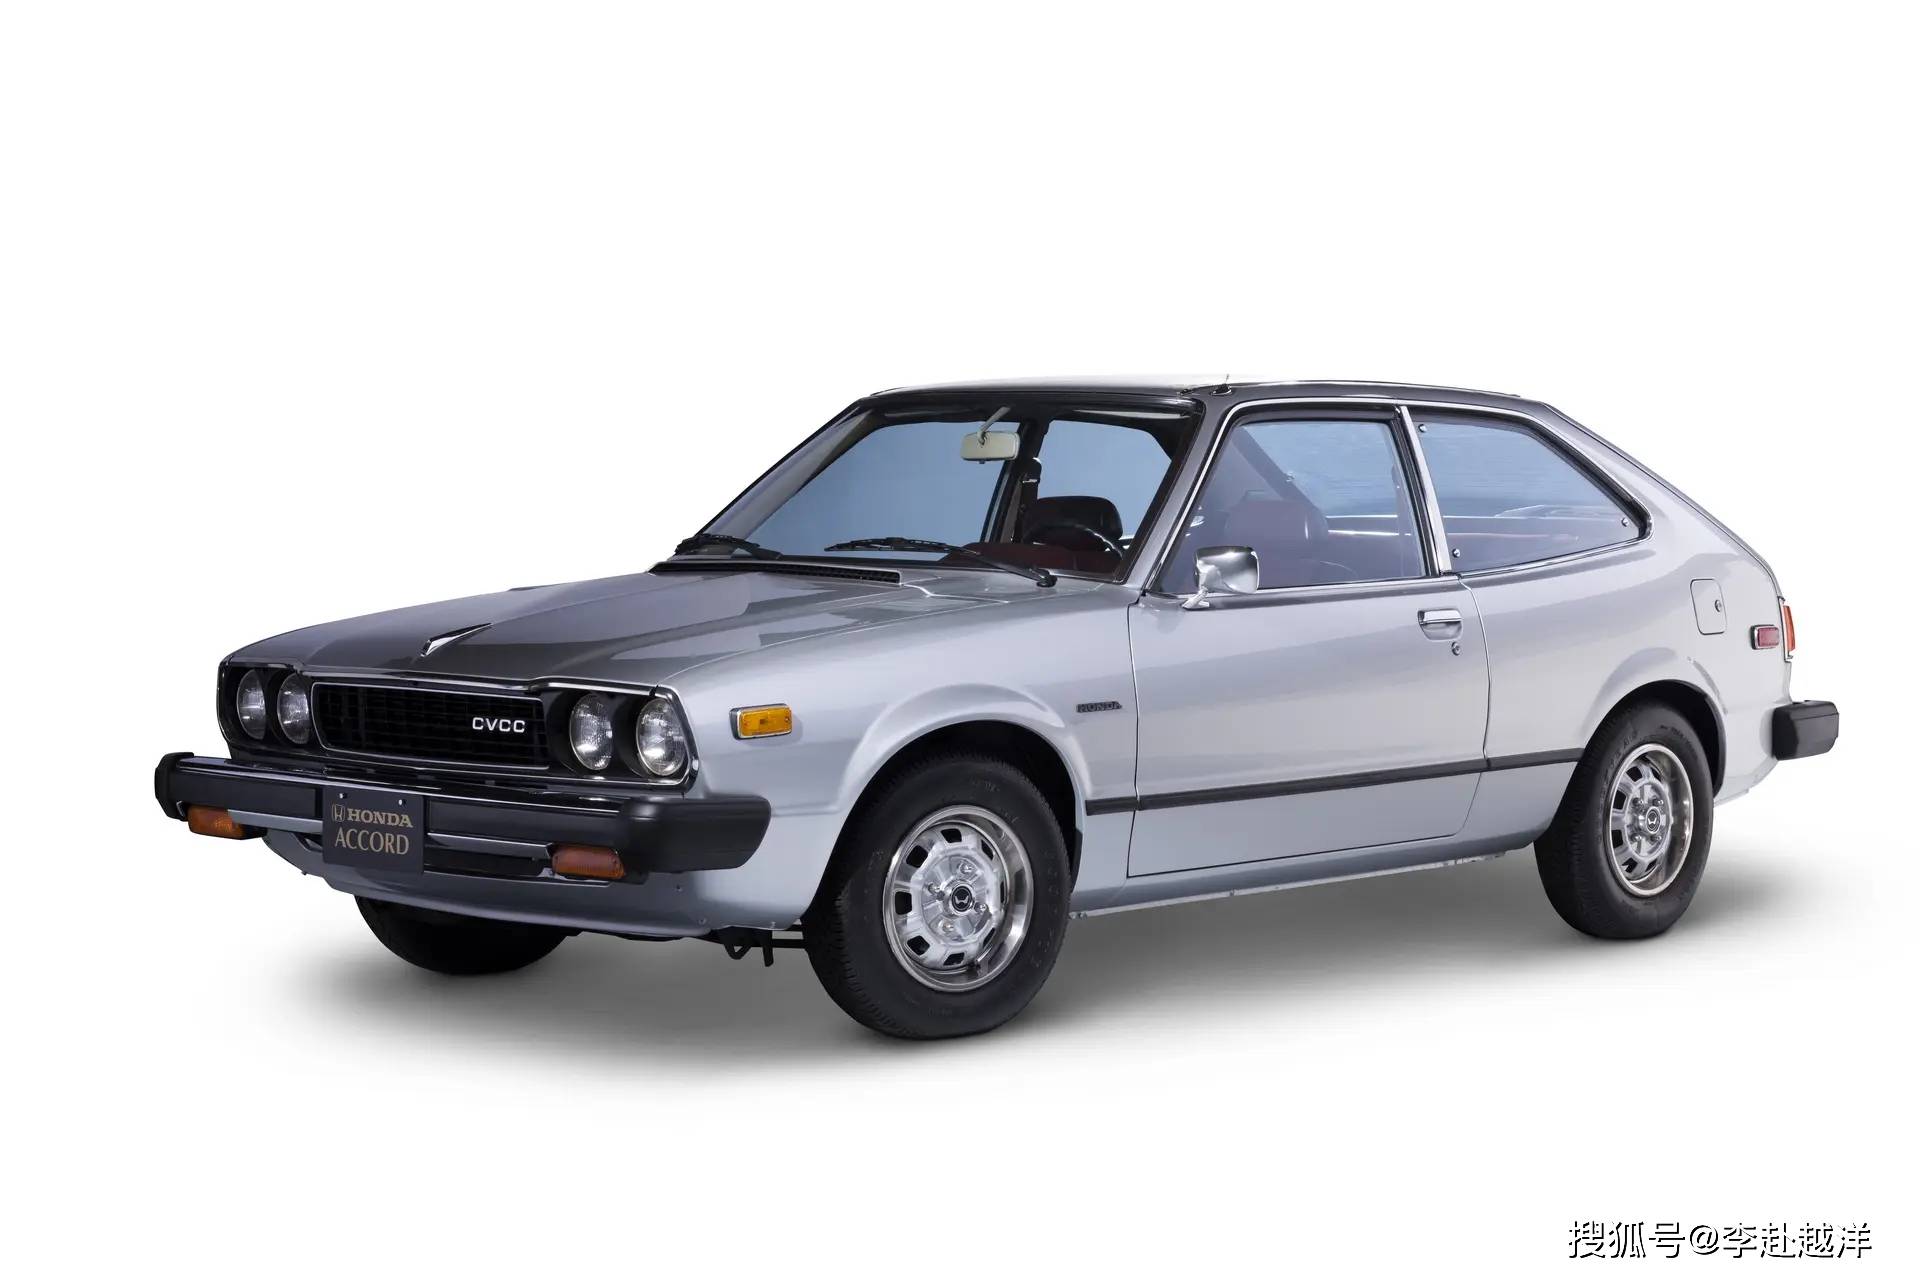 本田雅阁(accord)有着46年的车型历史,作为本田的中高级轿车系